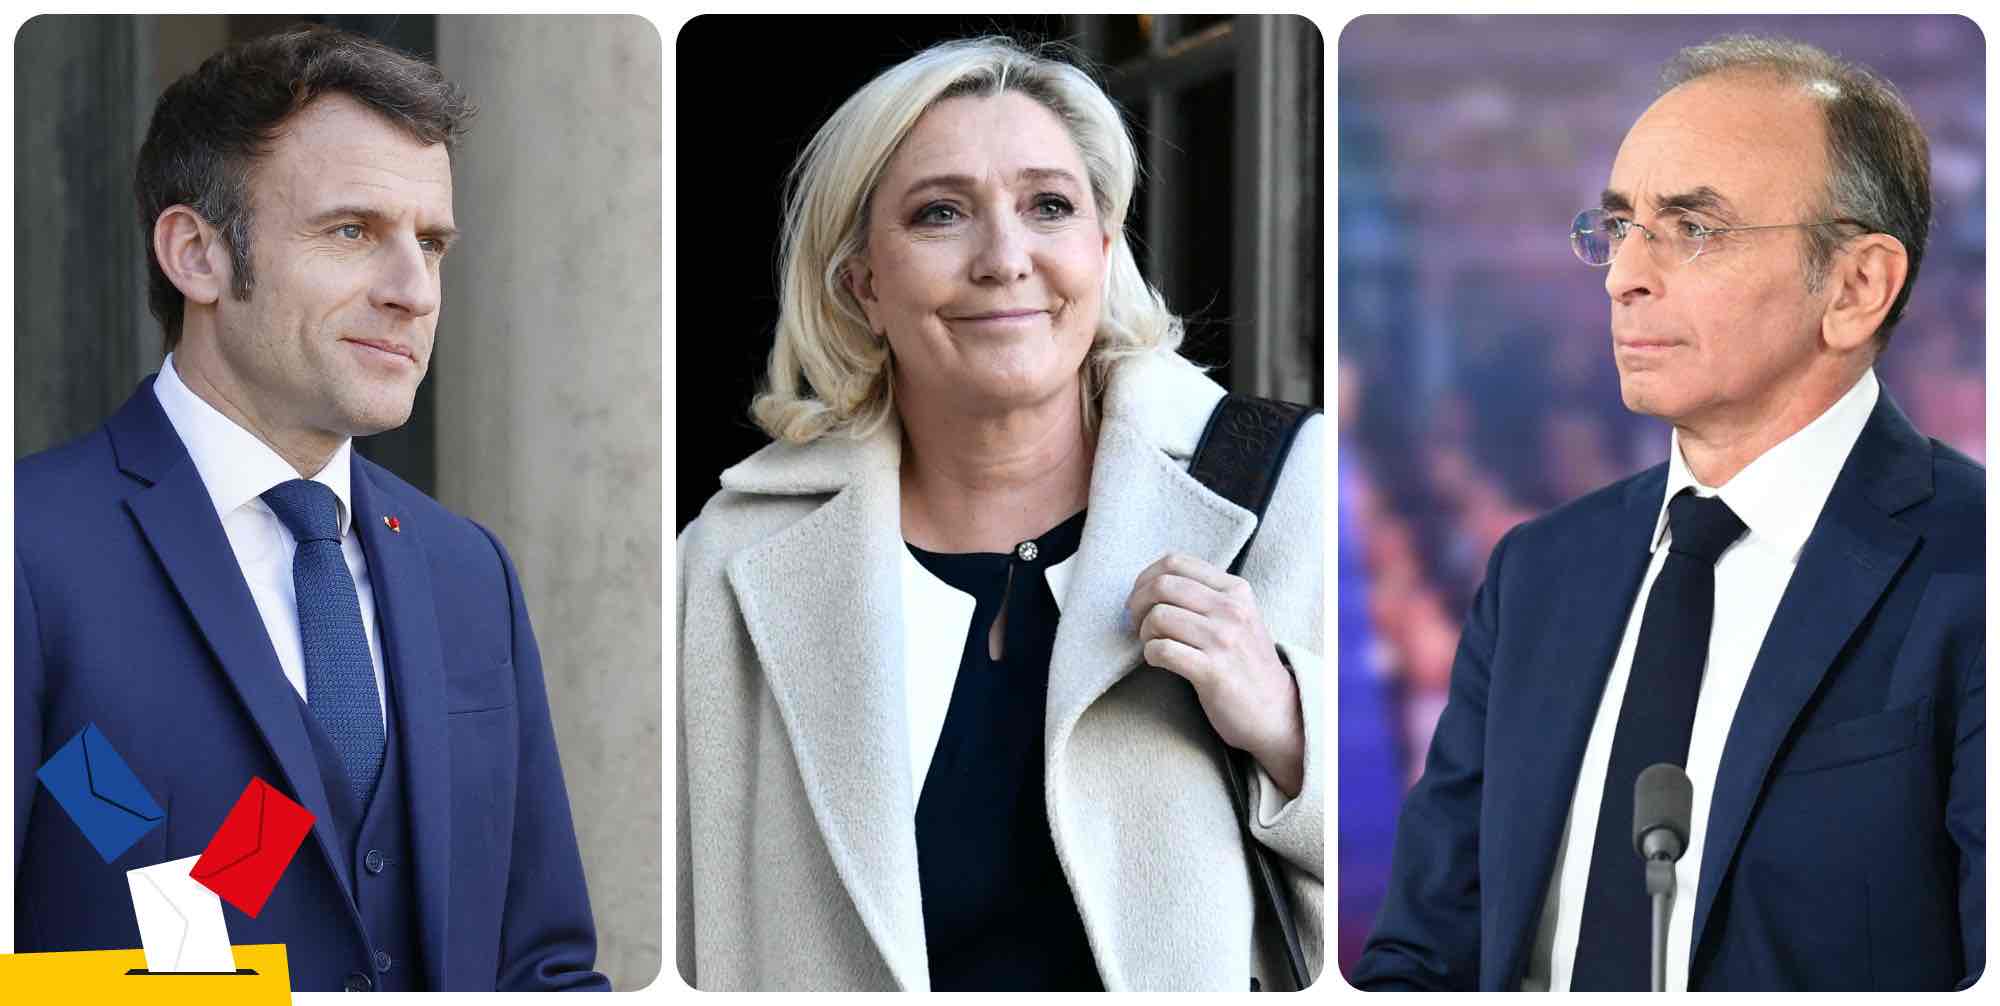 Sondages présidentielles 2022 récents: Macron recule, Le Pen progresse